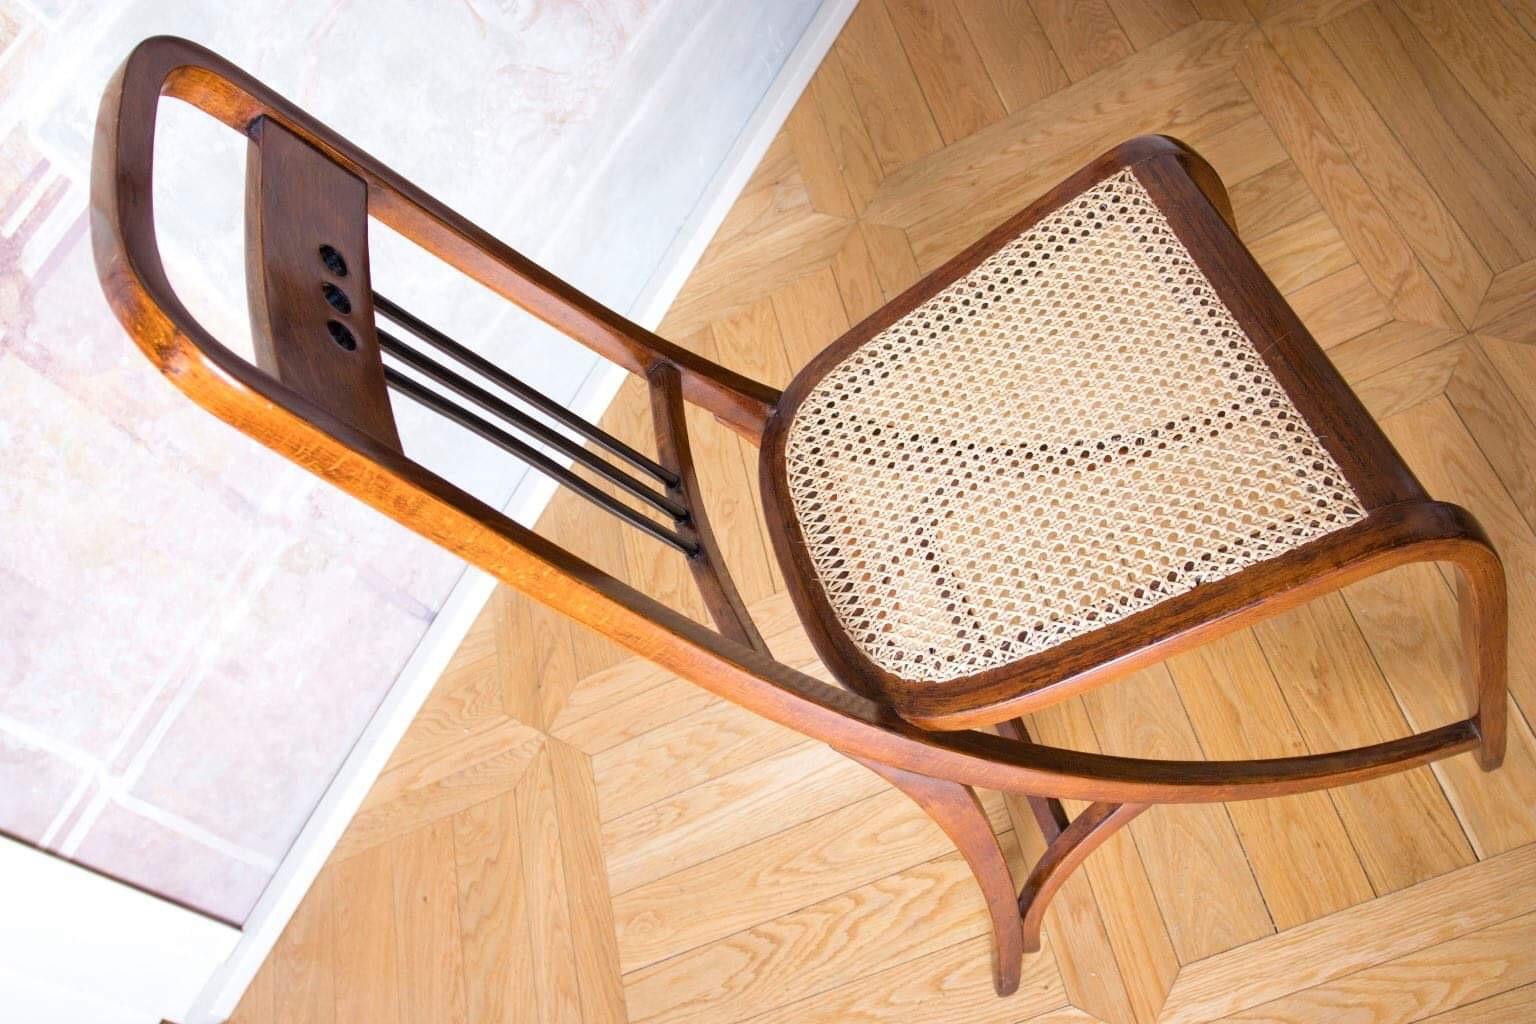 Wien Thonet Art Nouveau Chairs No.511 Designed by Josef Hofmann For Sale 1